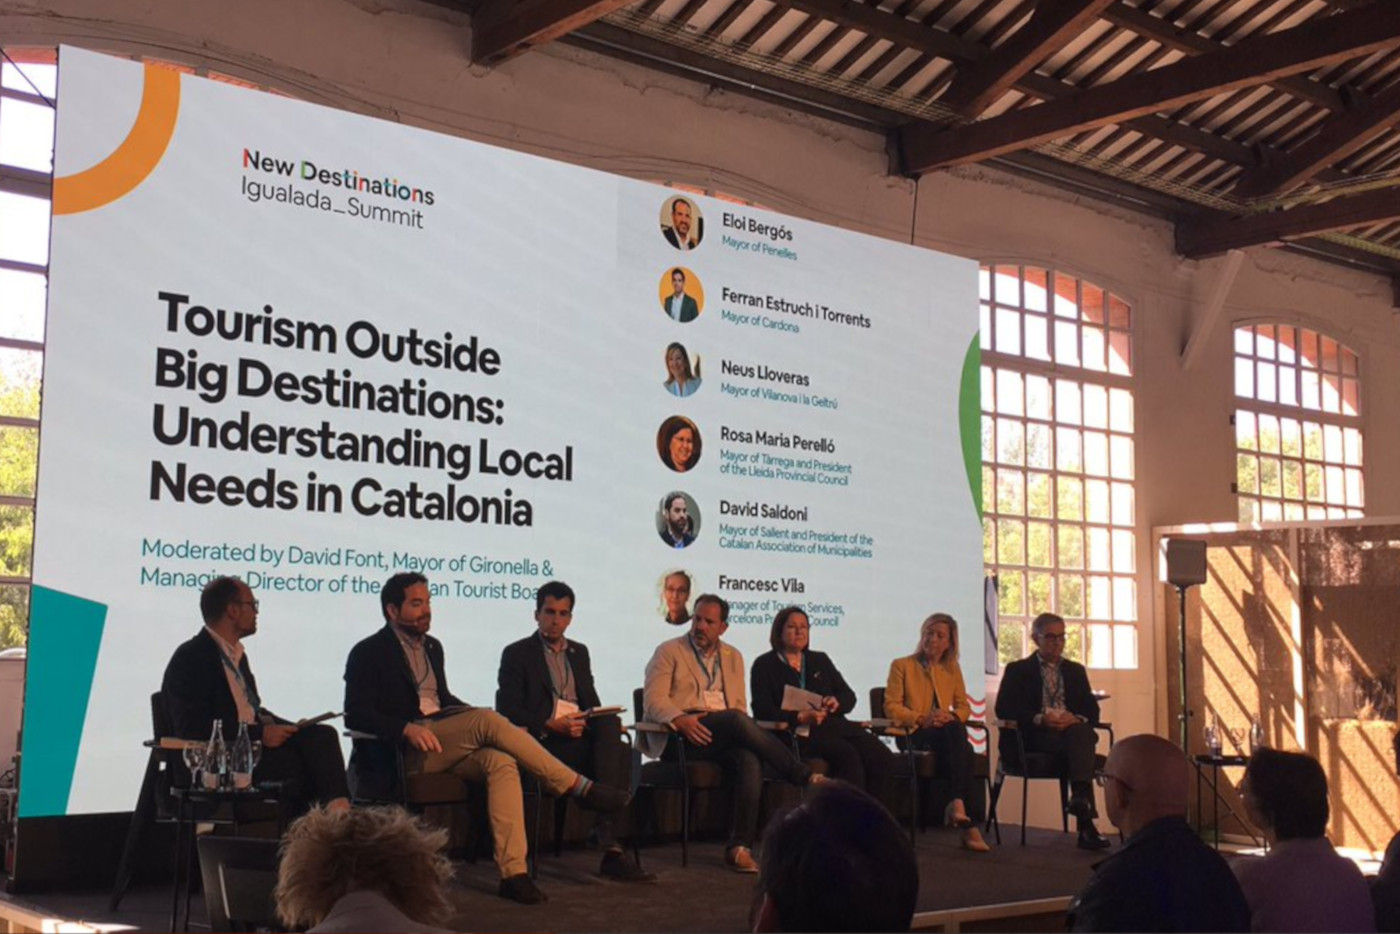 New Destinations Summit Reúne 300 Personas Para Debatir Sobre El Turismo Sostenible